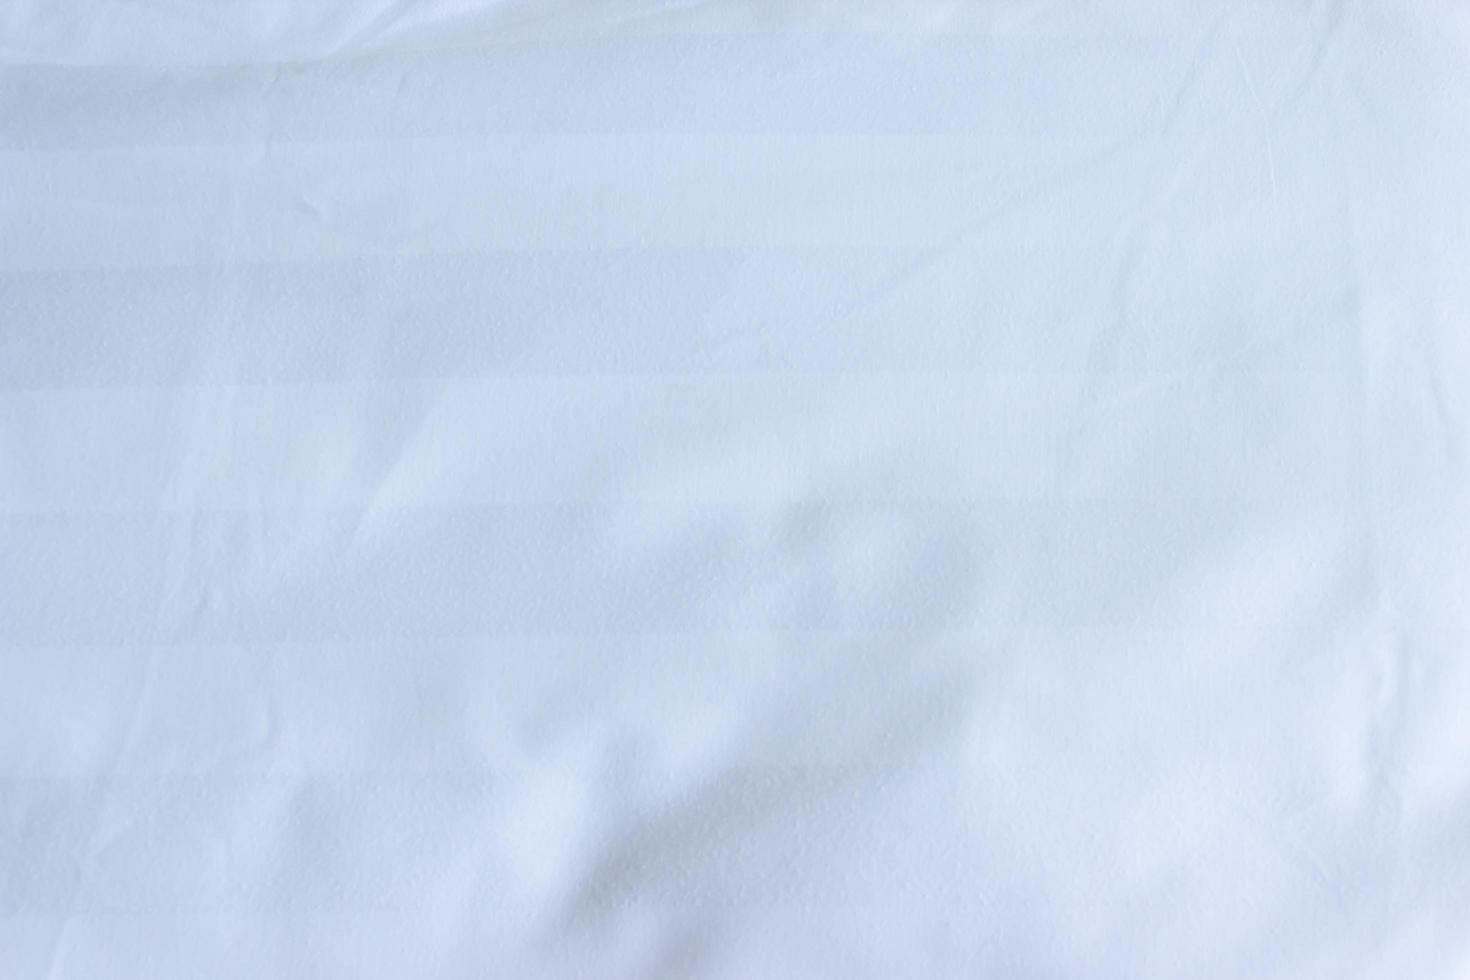 drap de lit blanc pour la texture ou l'arrière-plan photo